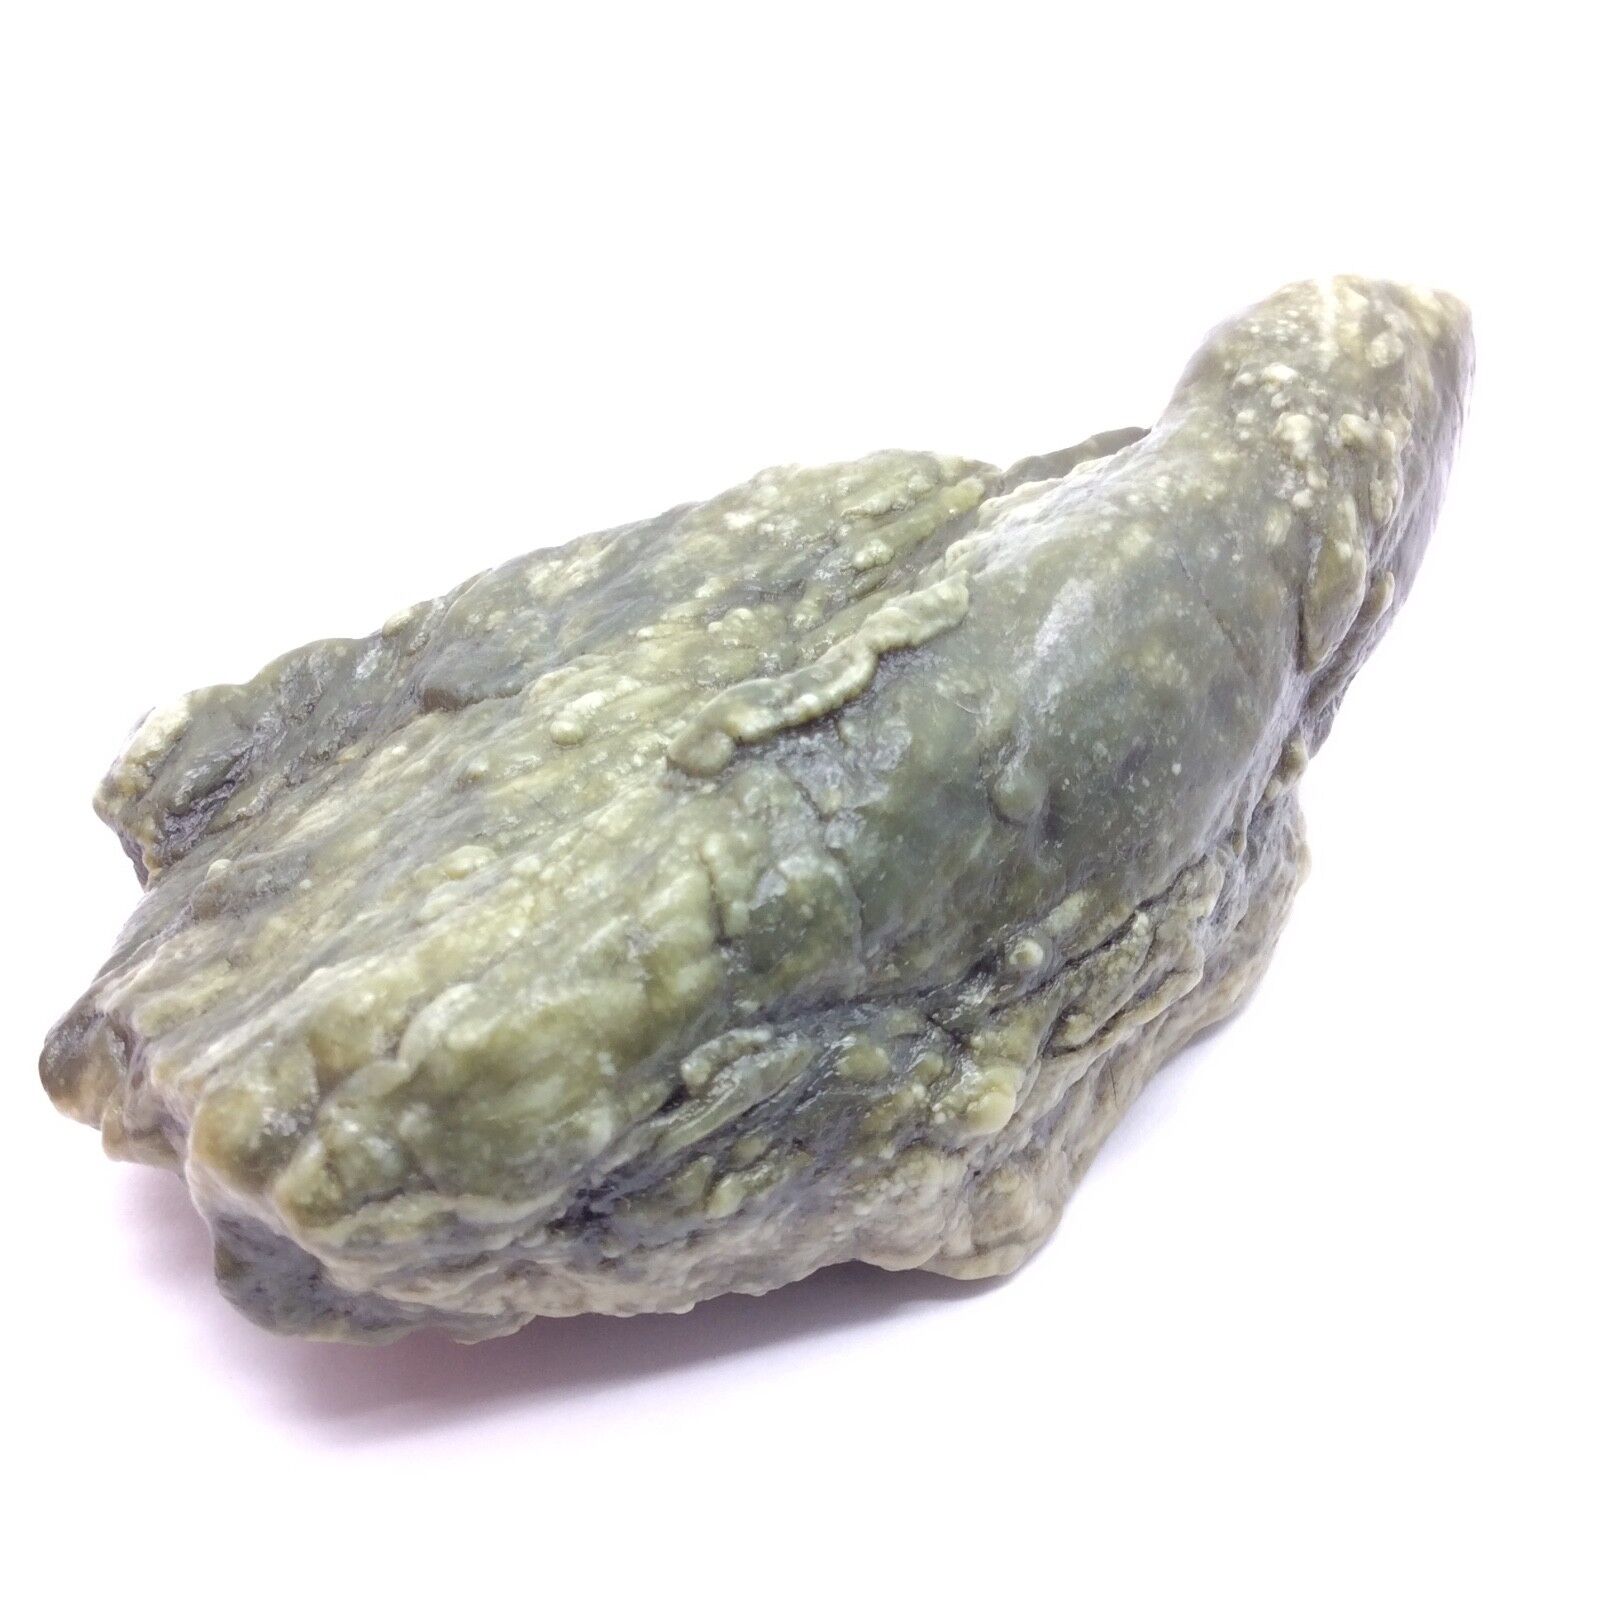 Trinity Alps Botryoidal Jade Stone Green Bubble Nephrite Jade Specimen CA #8